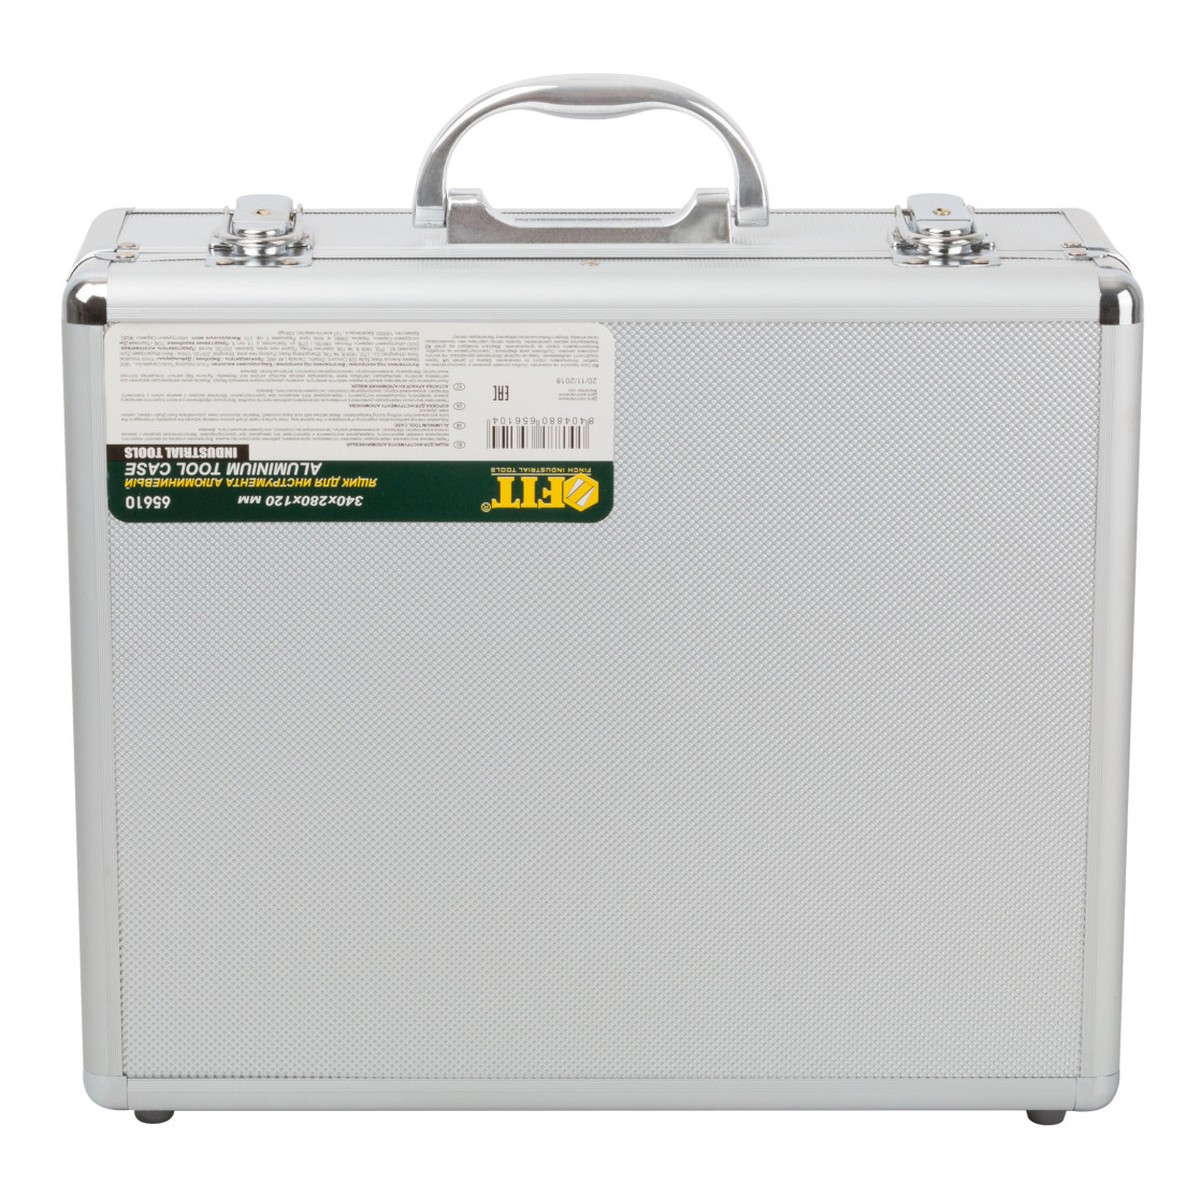 Купить ящик-чемодан алюминиевый для инструмента 34х28х12см, fit 65610 .